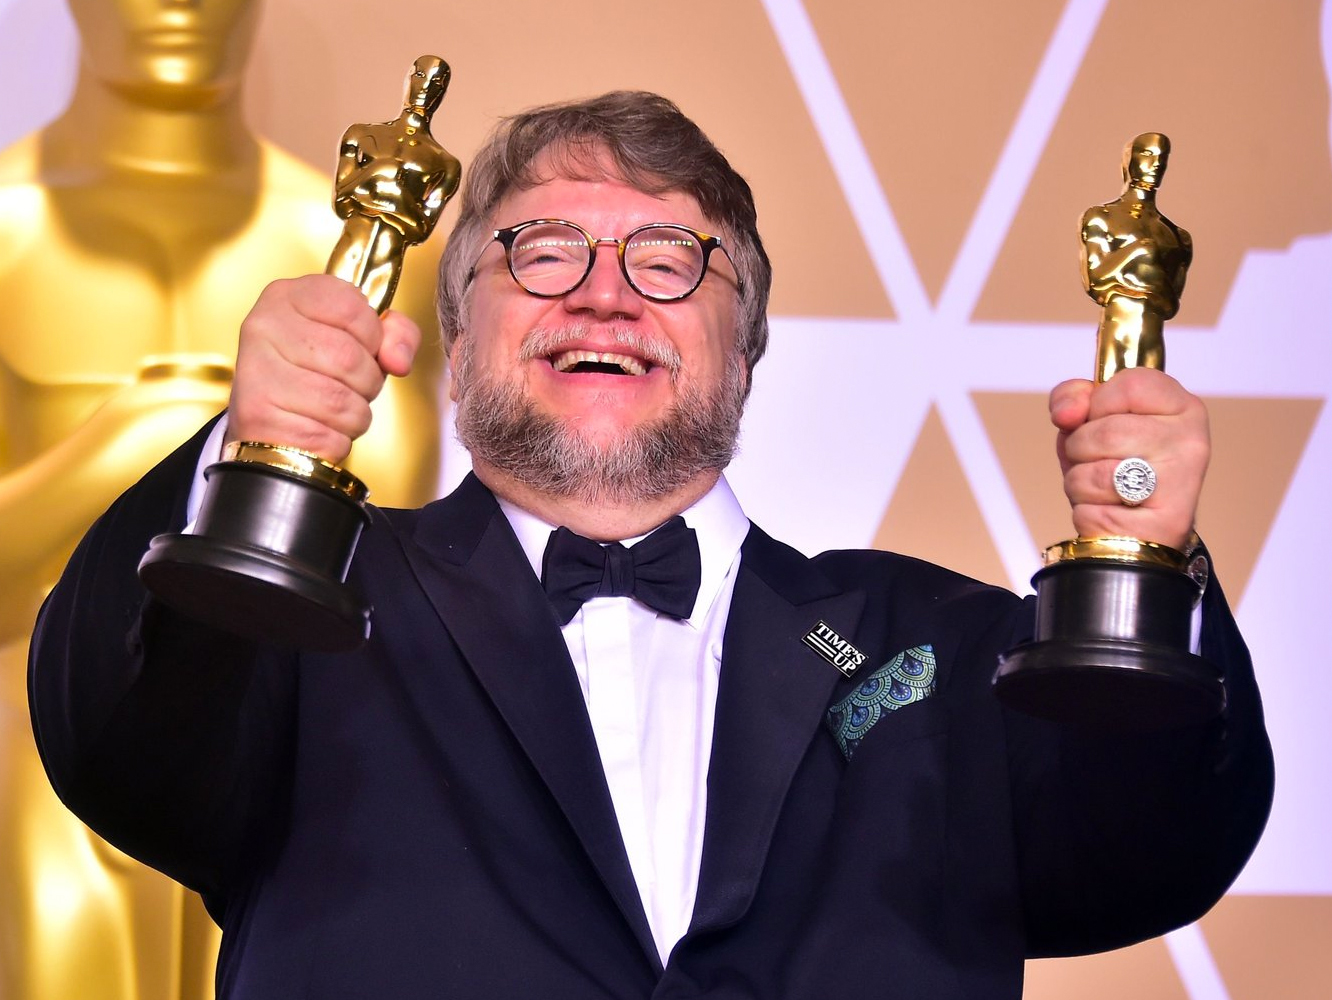  Premios Oscar 2018 | Del Toro sale victorioso con 4 Oscars para ‘The Shape Of Water’, incluyendo Película y Dirección